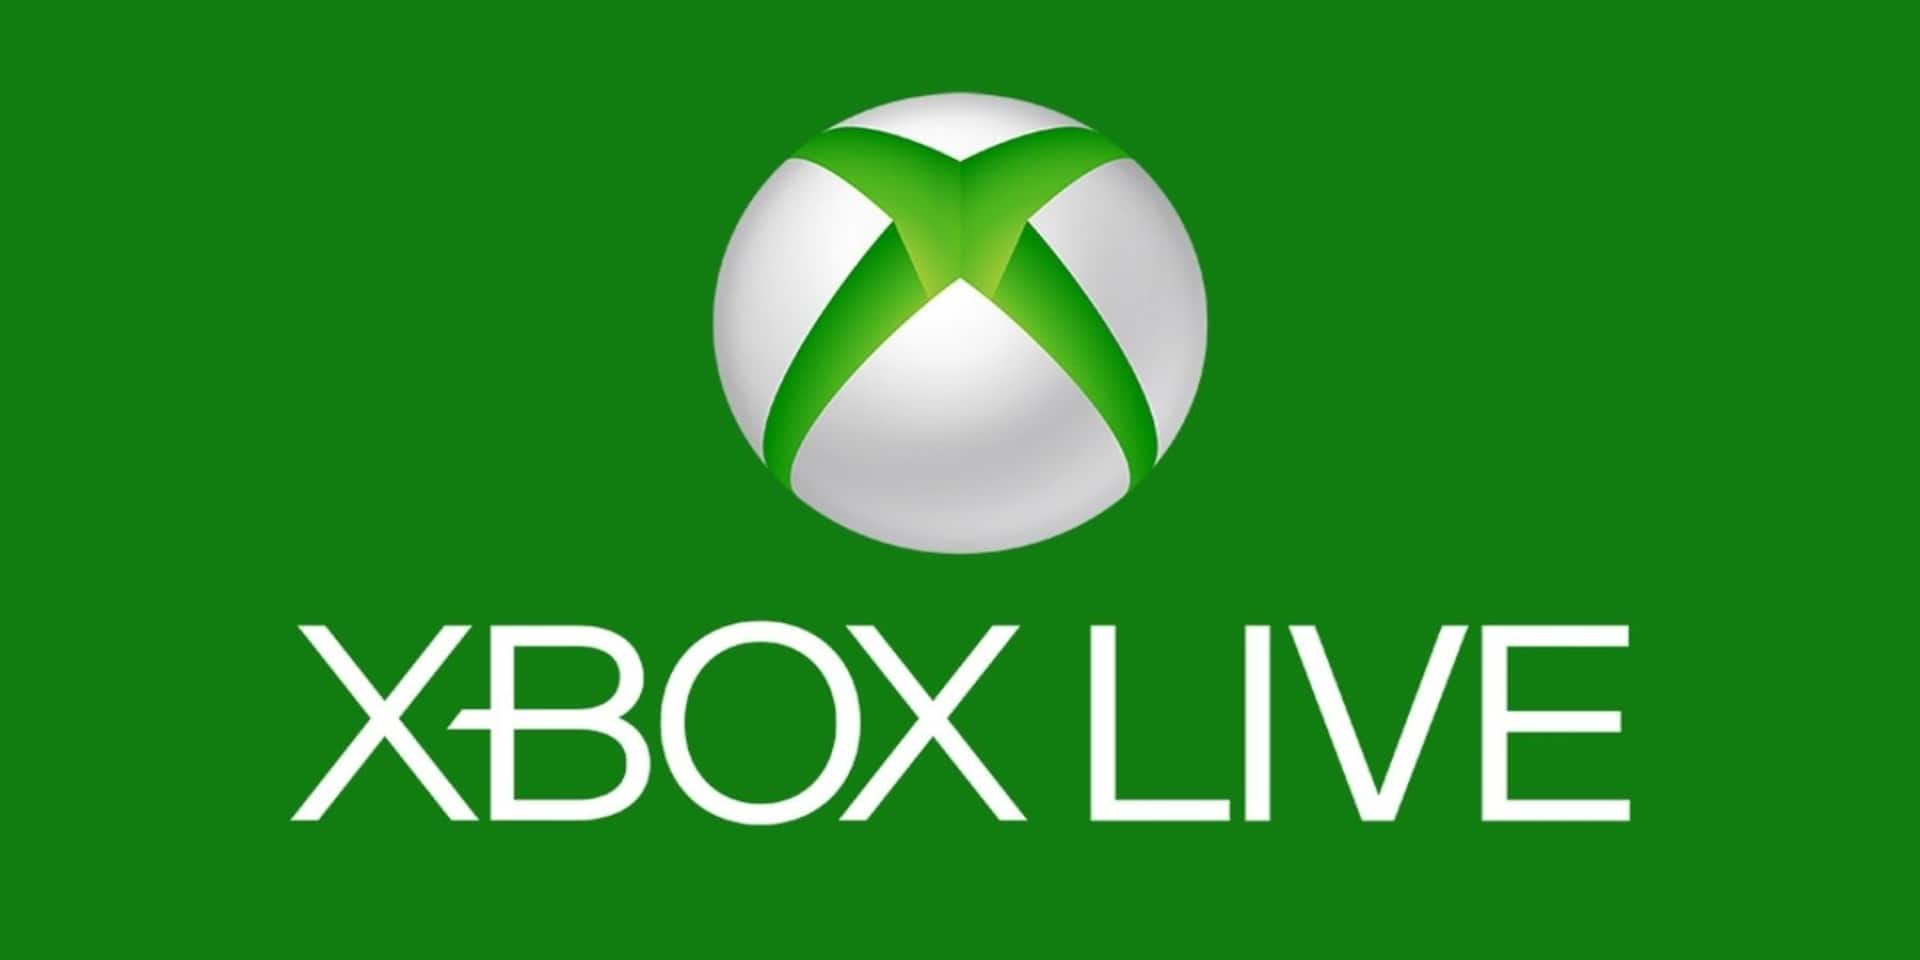 Microsoft proporciona una actualización sobre las interrupciones de Xbox Live, GamersRD